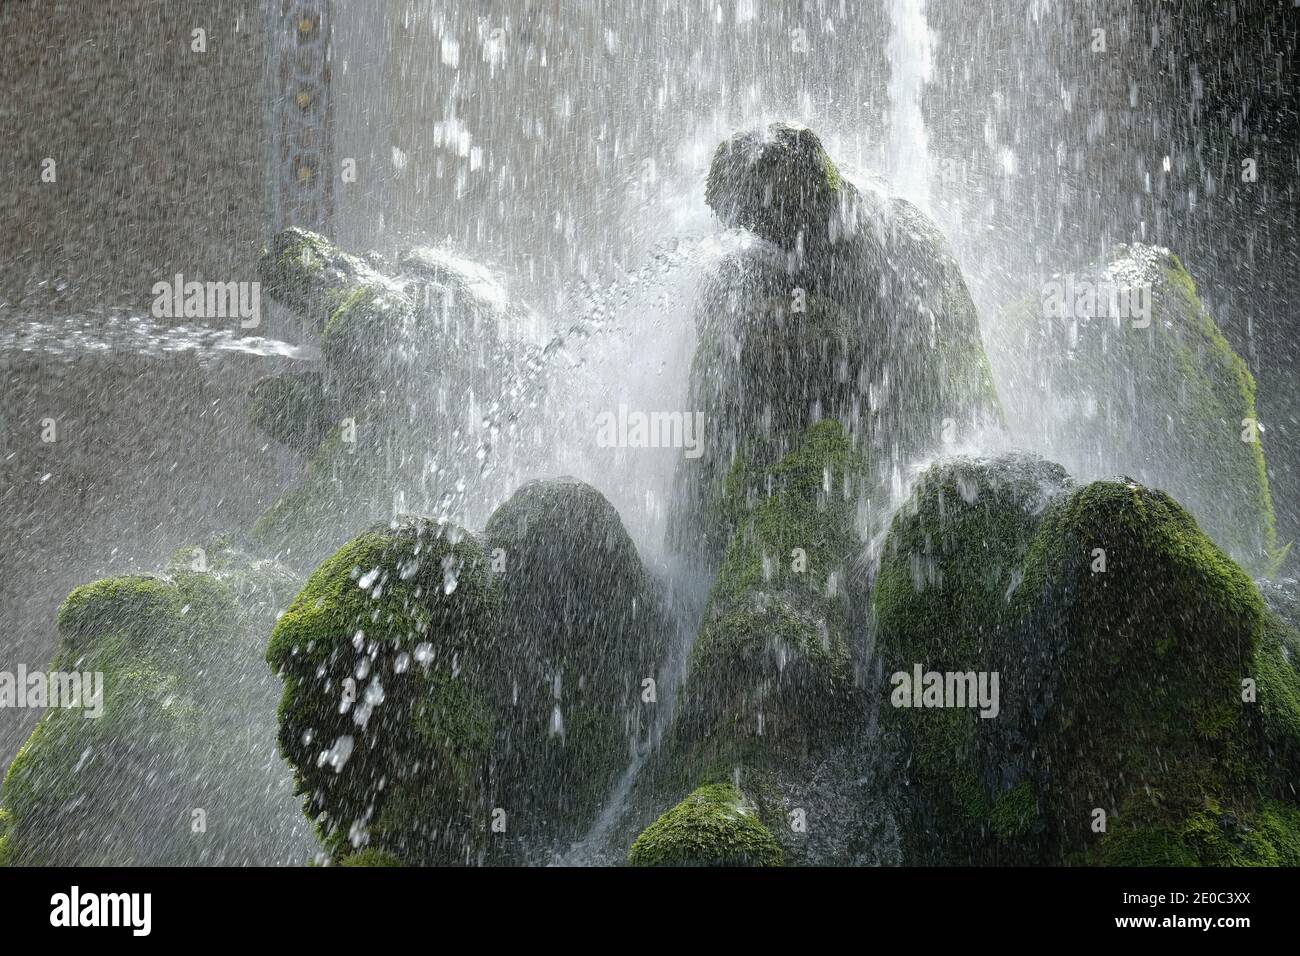 Fontaine des Dragons (Fontana dei Draghi) conçue par Pirro Ligorio dans le jardin de la Villa d'Este, Tivoli, Italie Banque D'Images